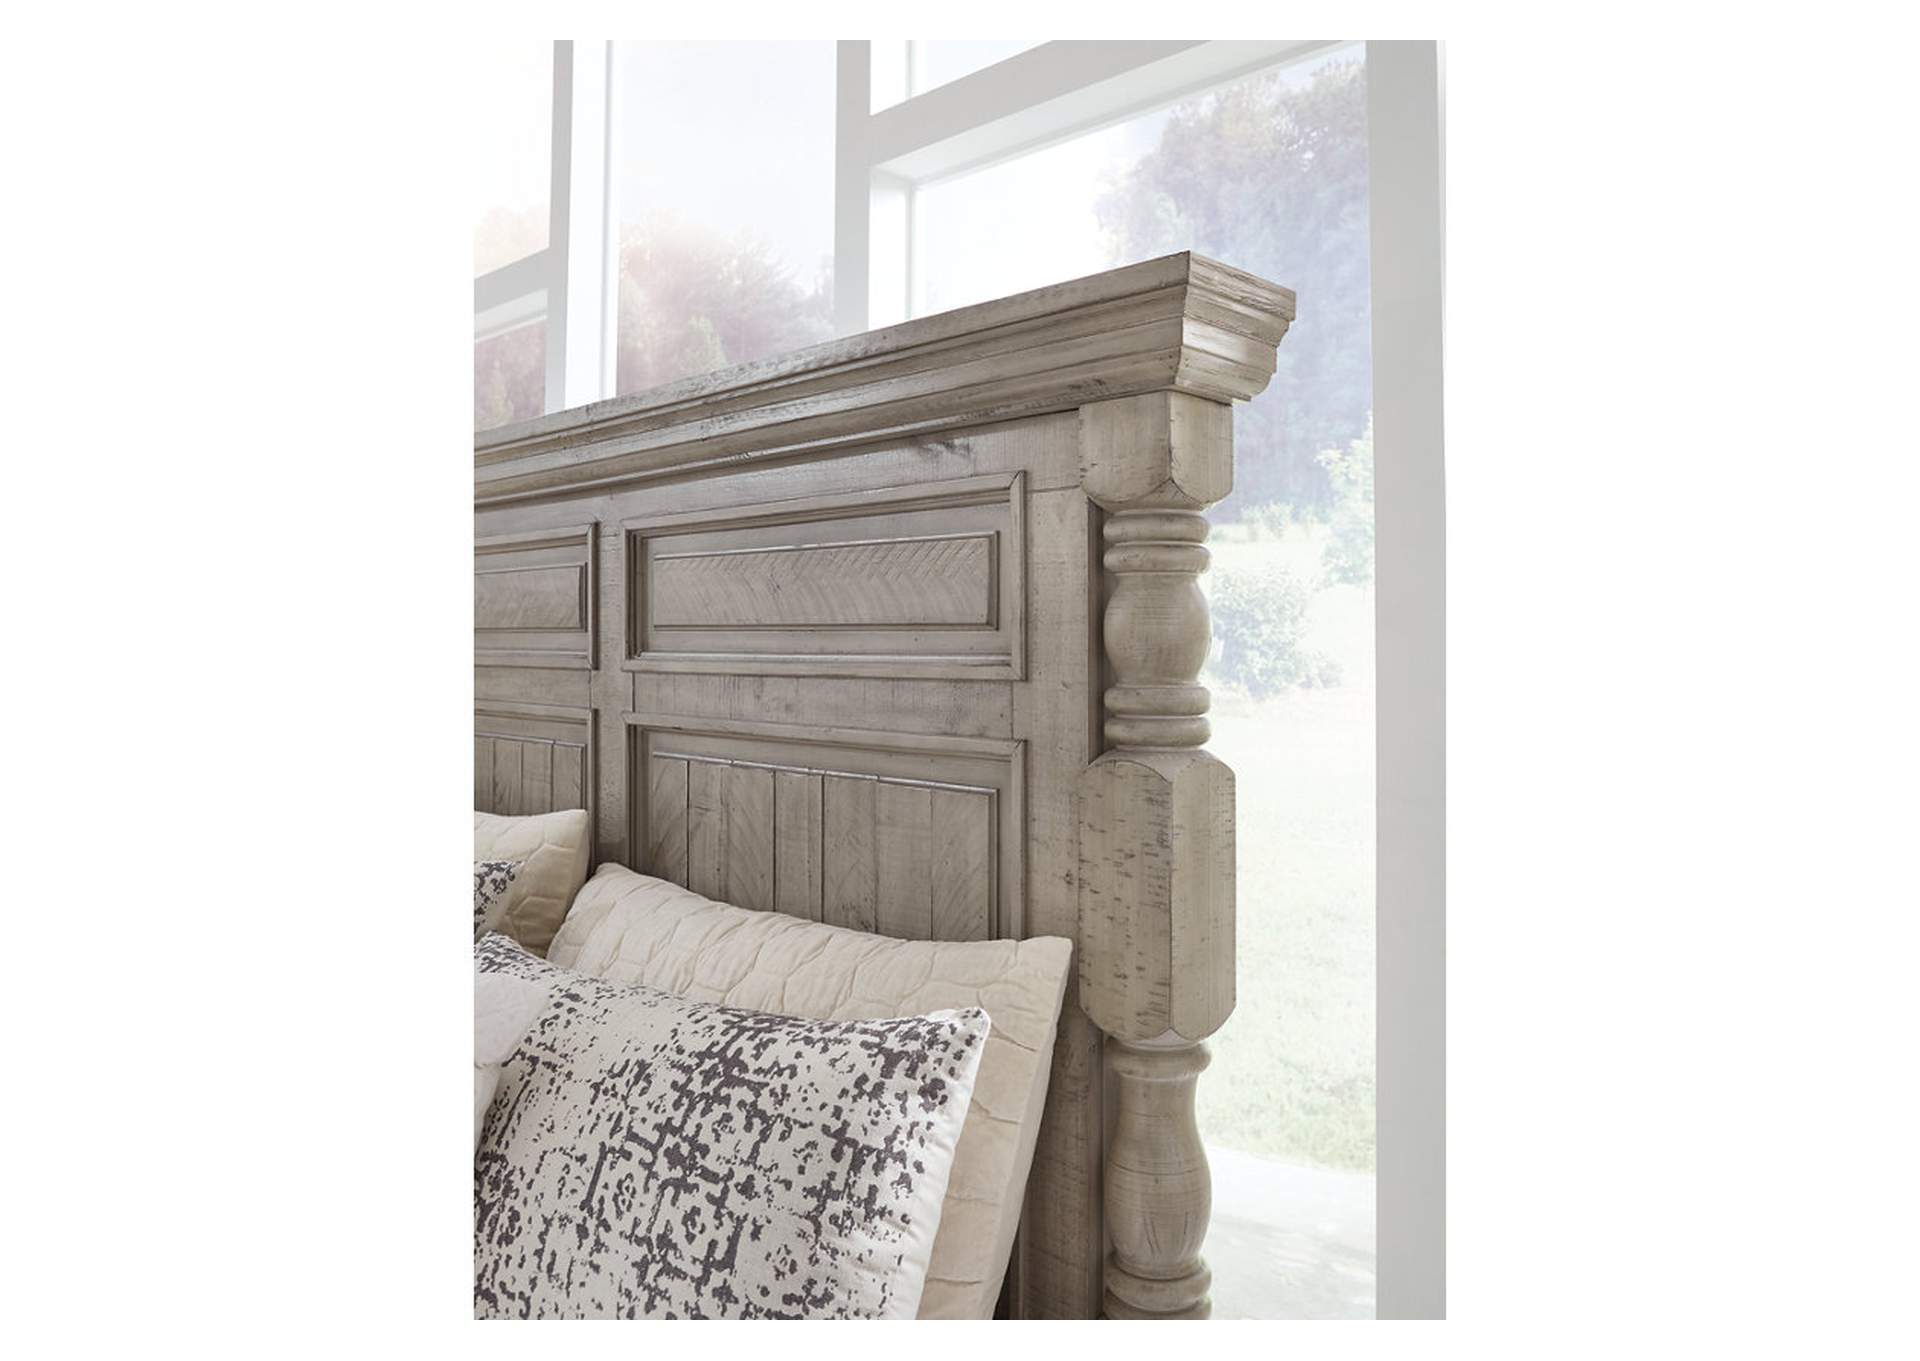 Harrastone Queen Panel Bed,Millennium